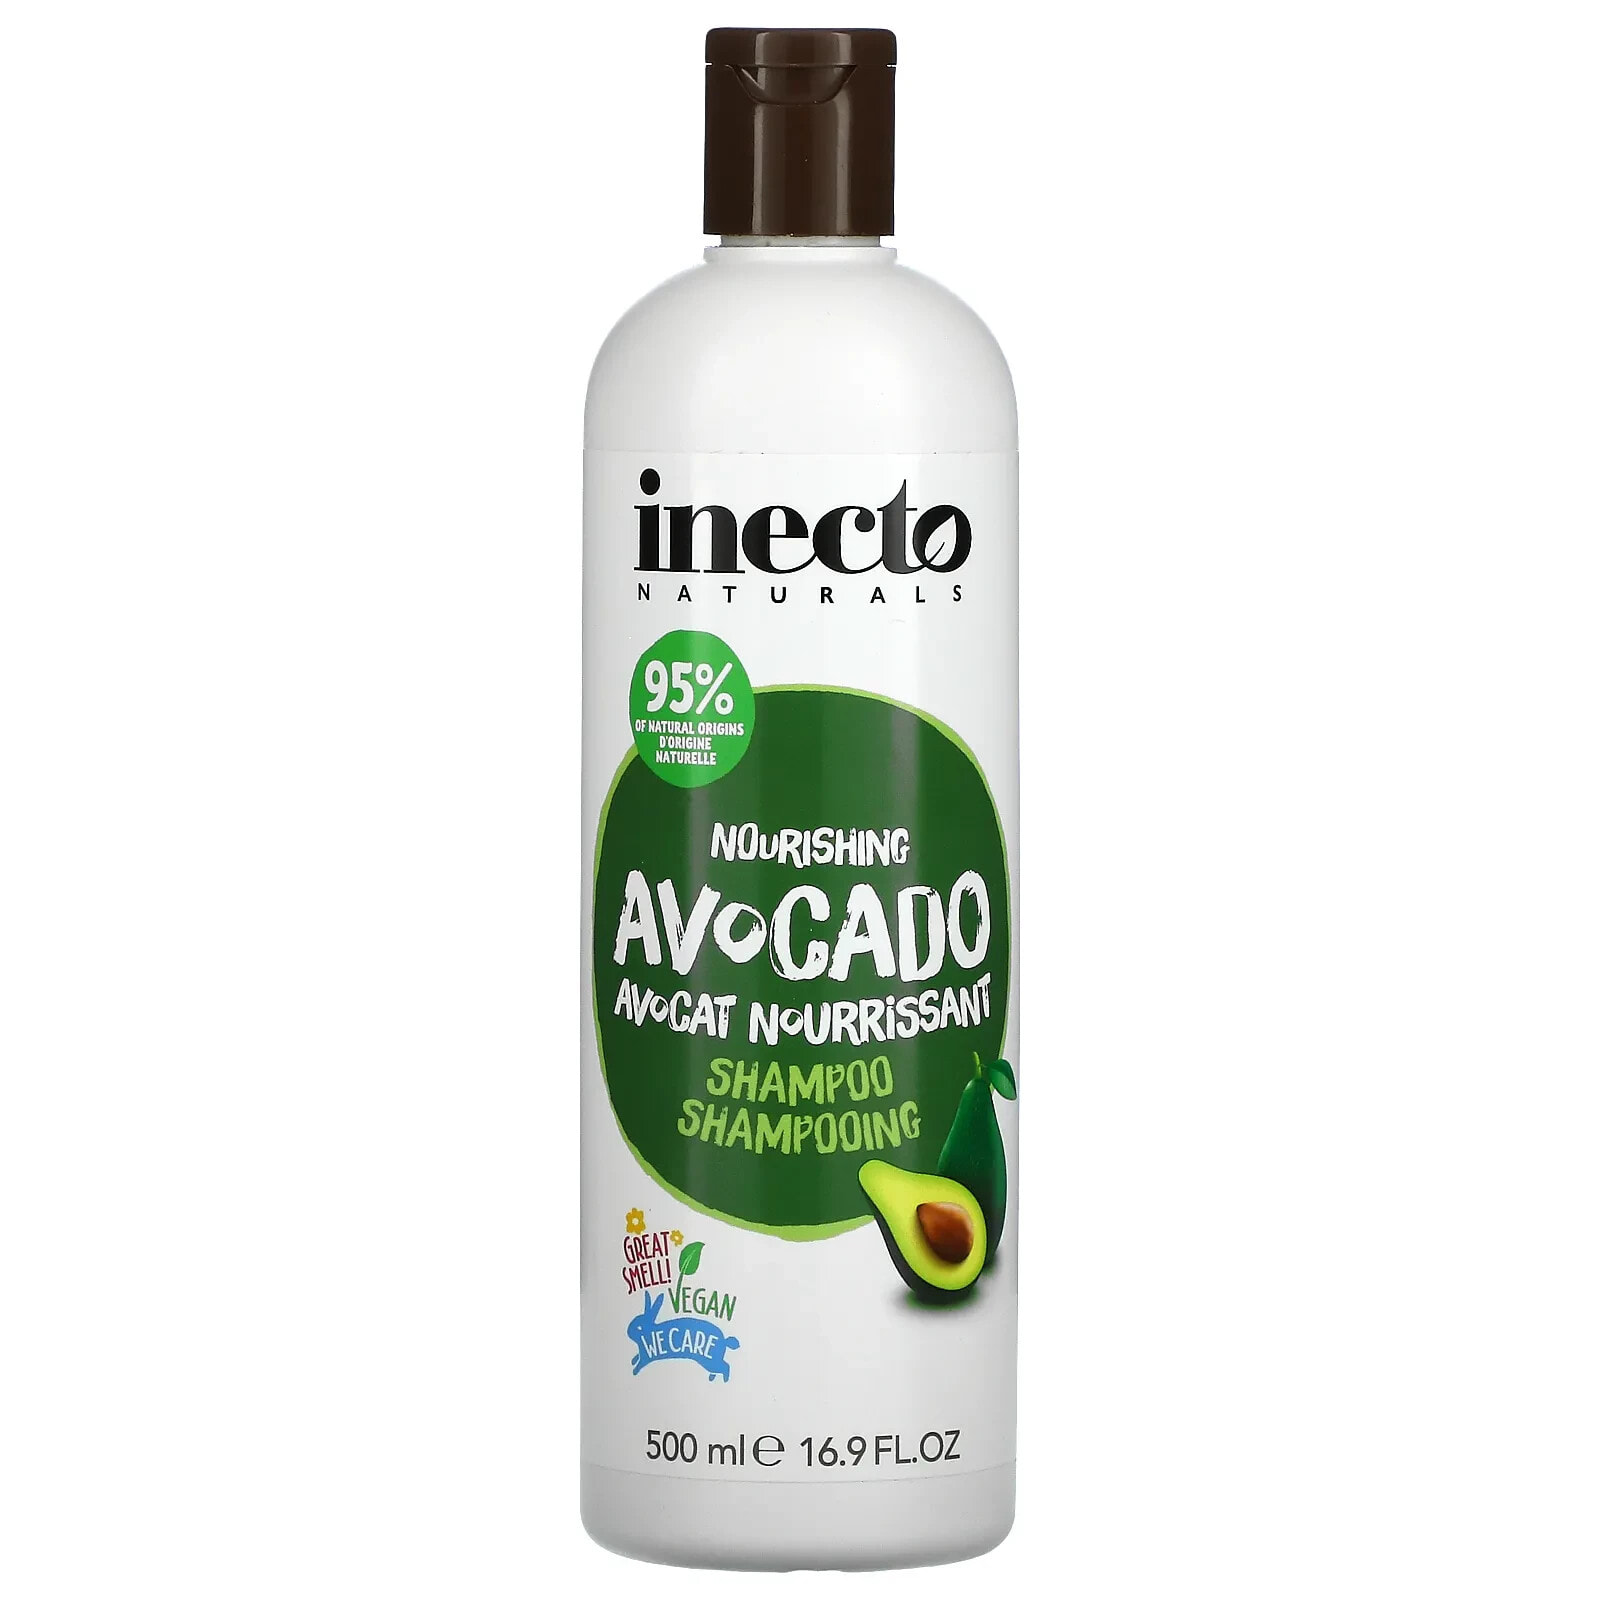 Inecto Nourishing Avocado Shampoo Питательный шампунь с экстрактом авокадо 500 мл